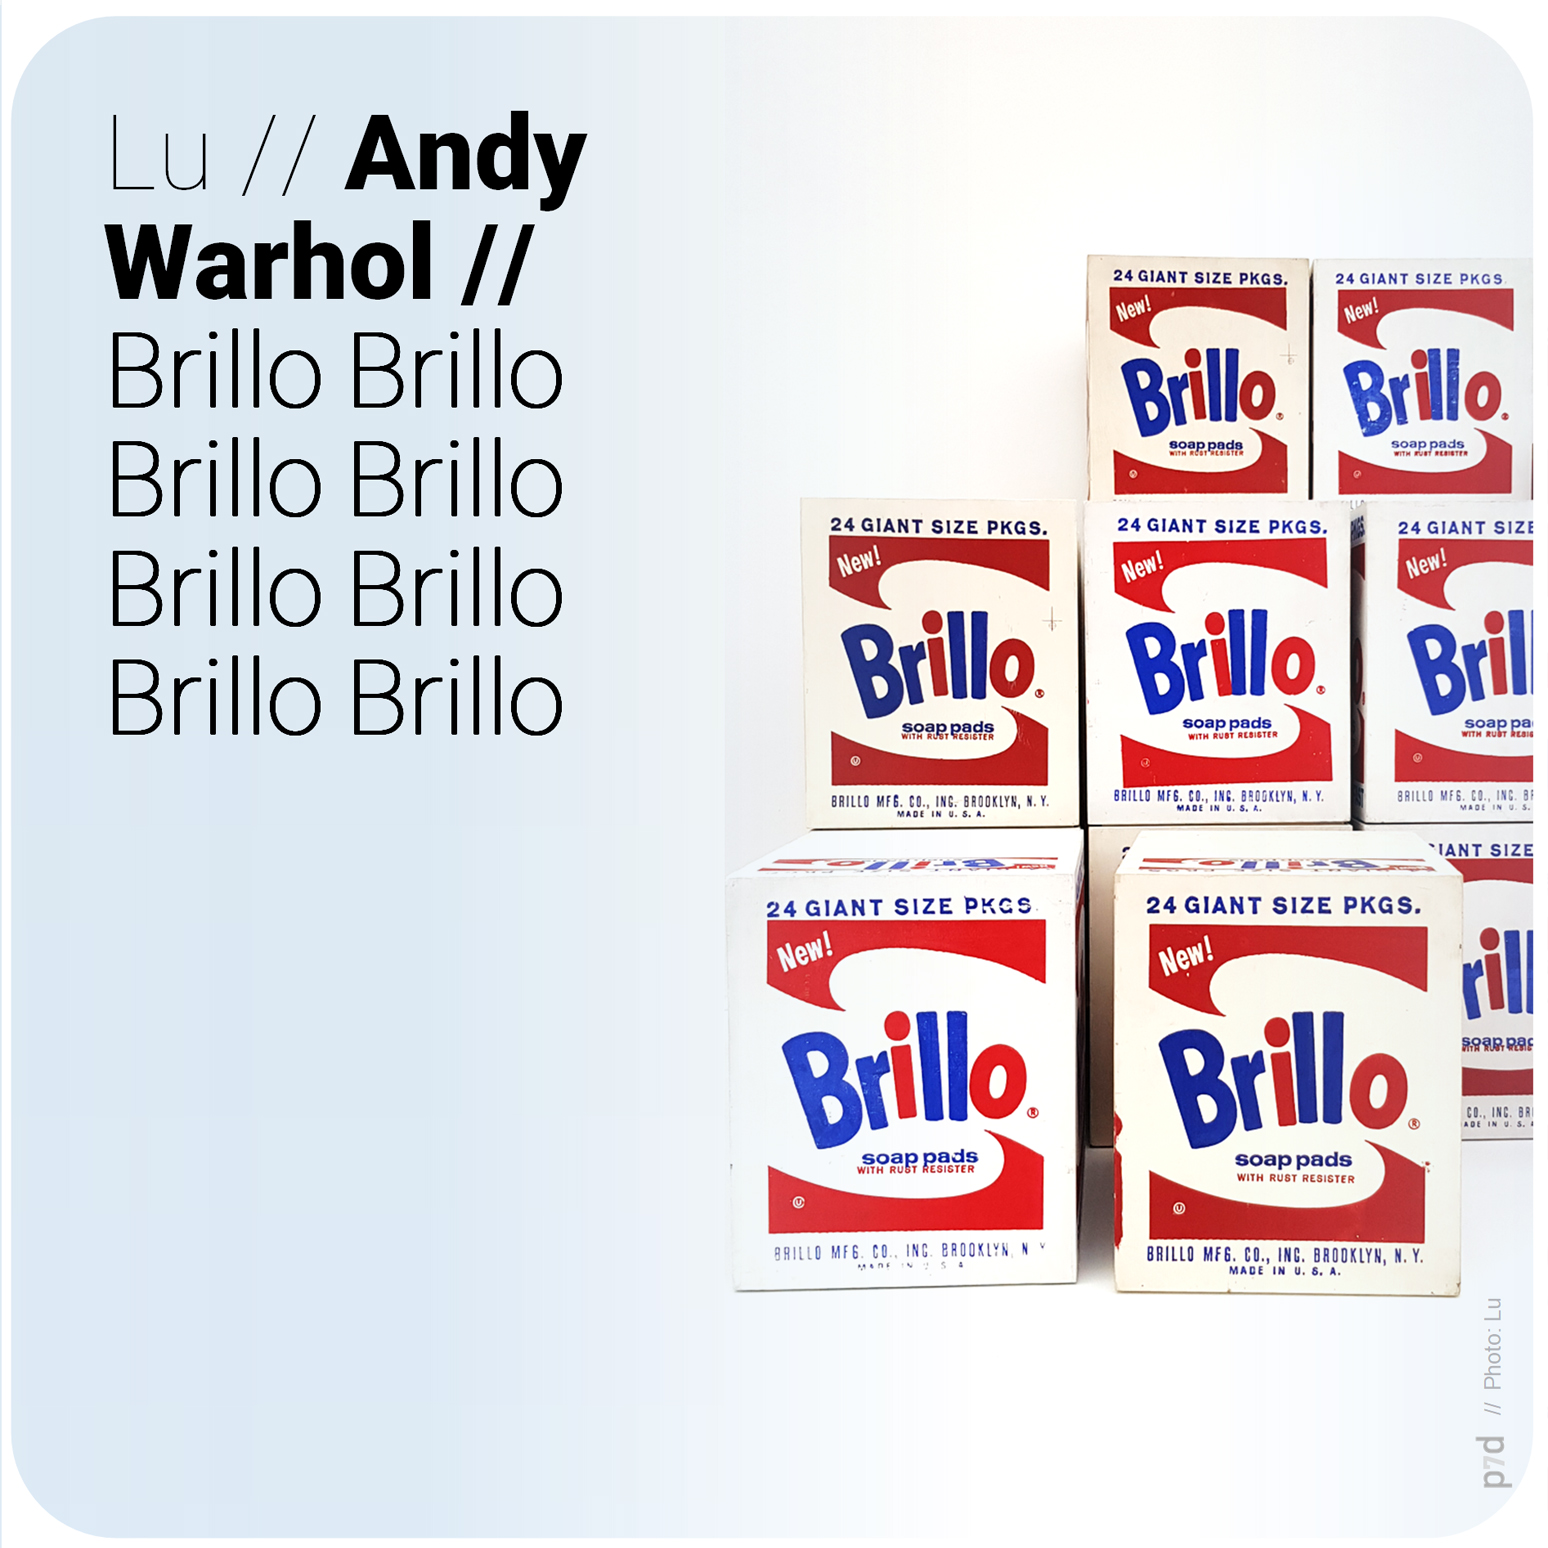 Lu // Andy Warhol // Brillo? Klar, kenn ich. – Aus Büchern, Taschen Verlag oderso.